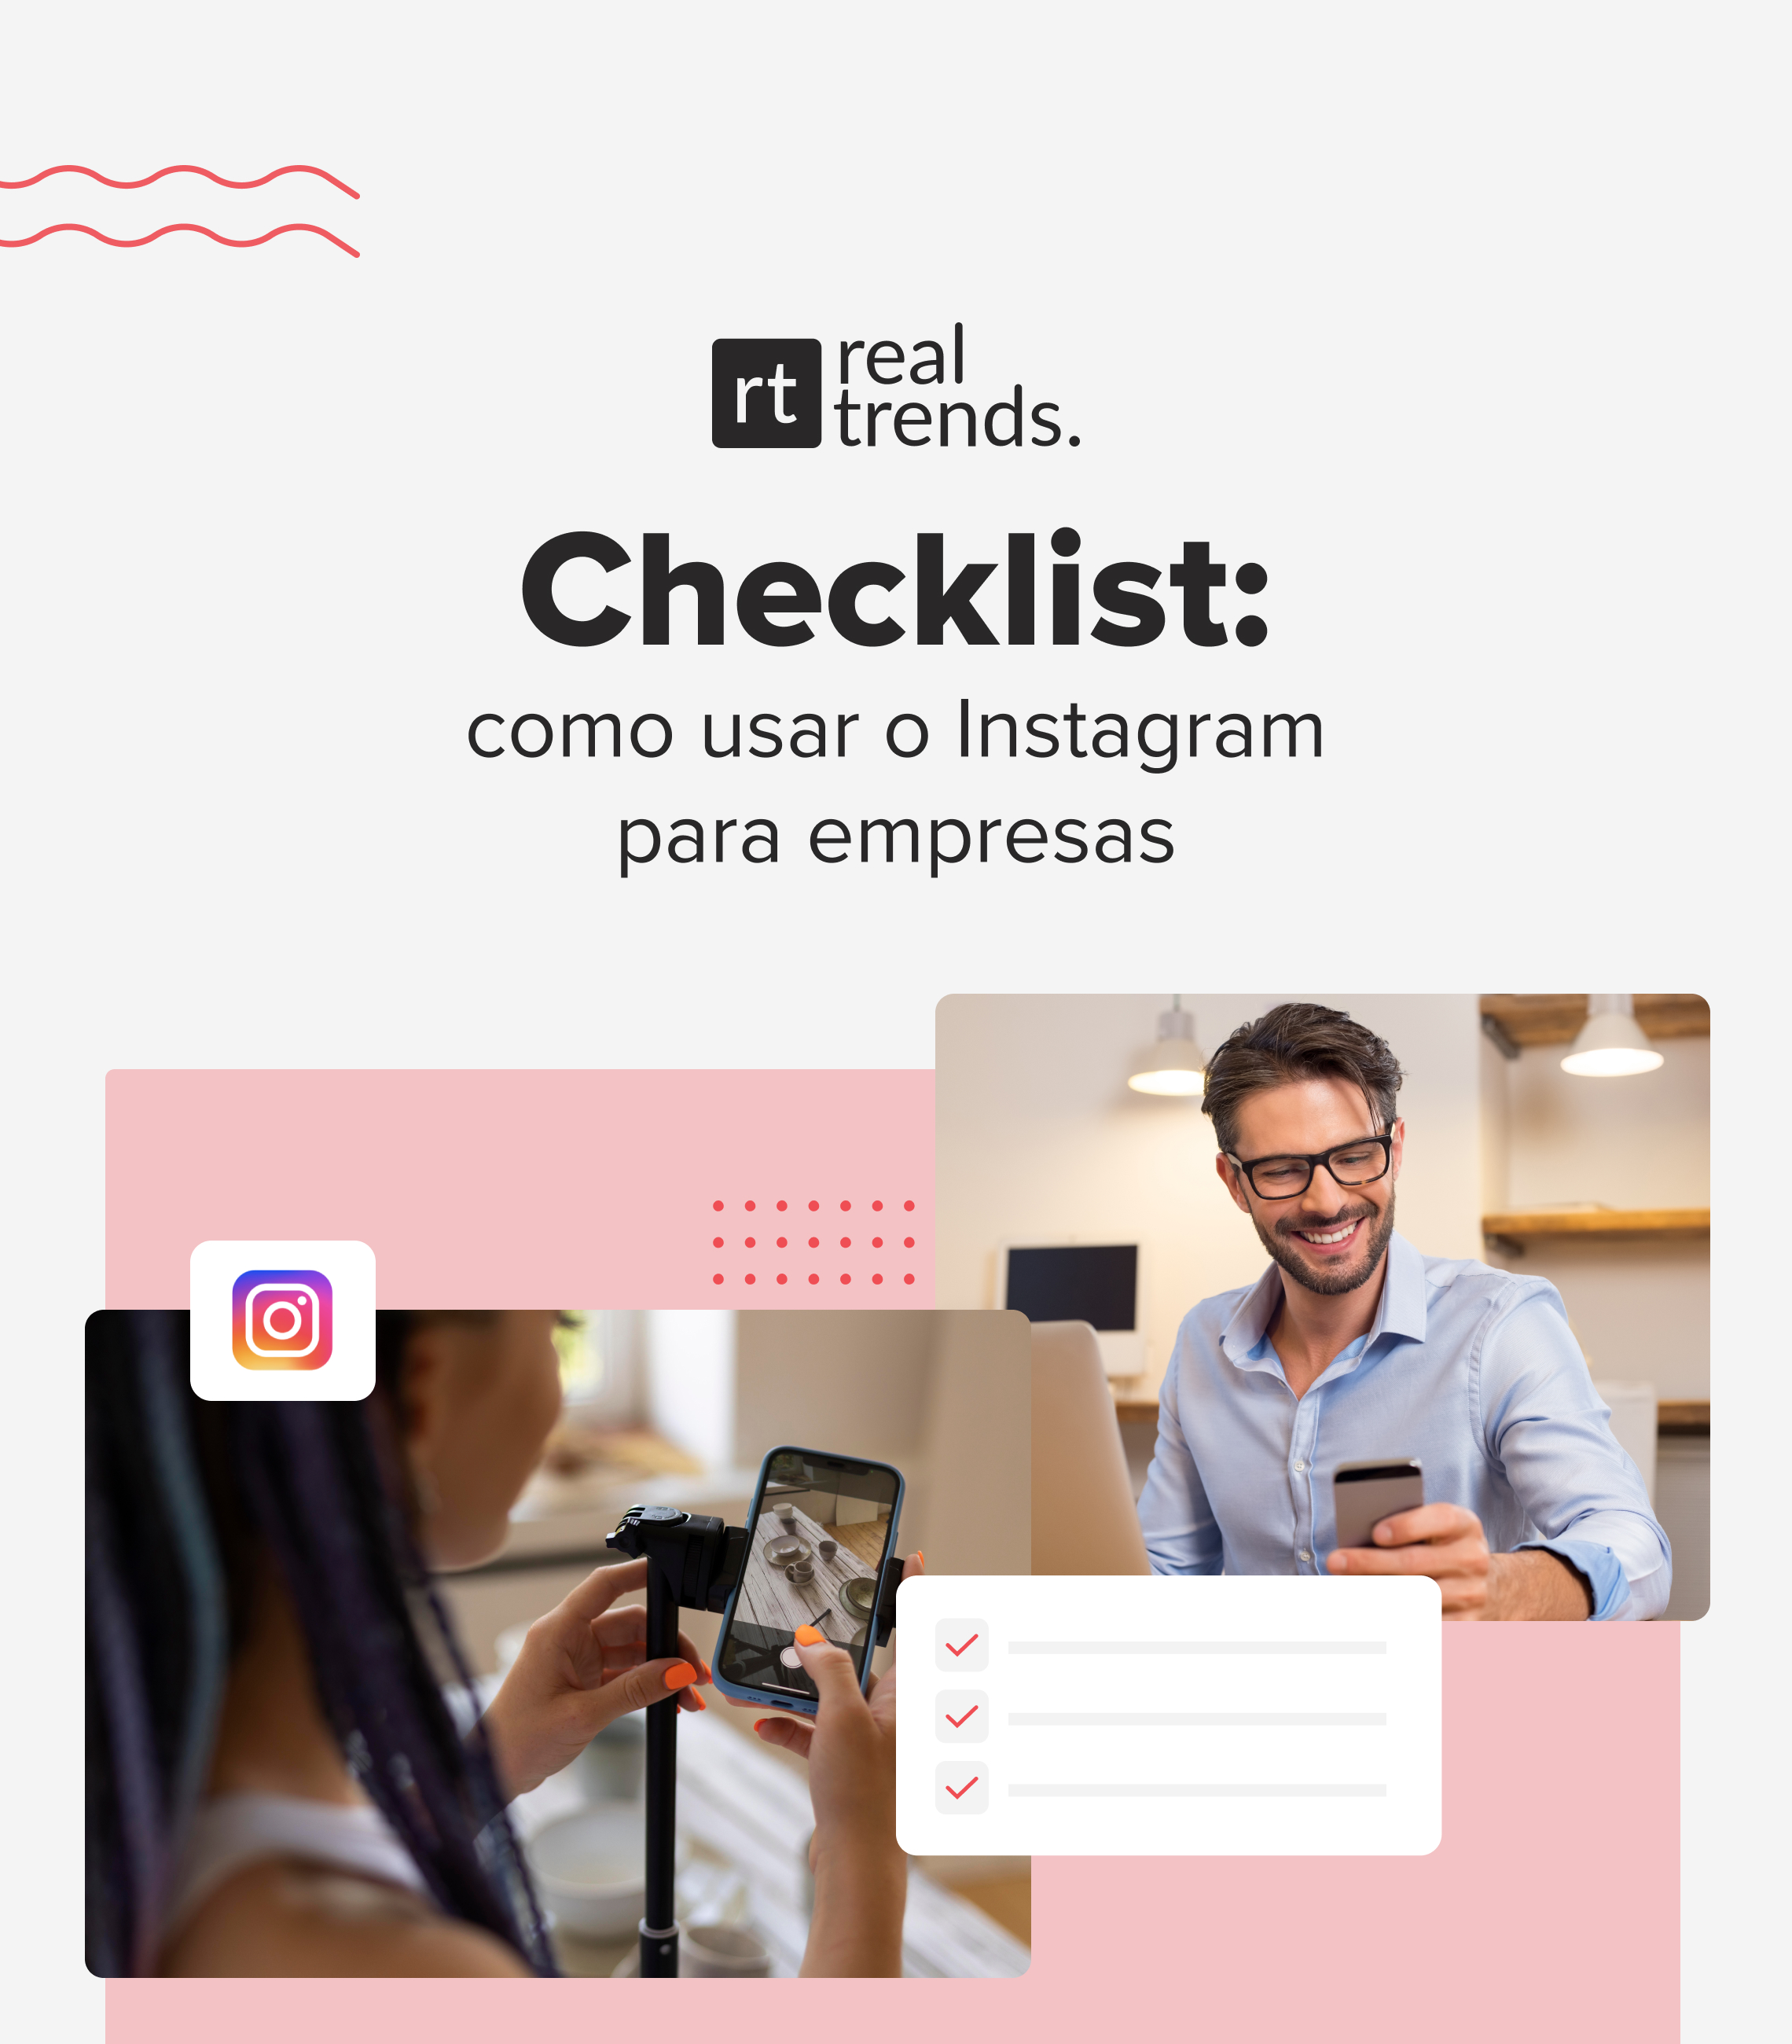 Imagen checklist-instagram